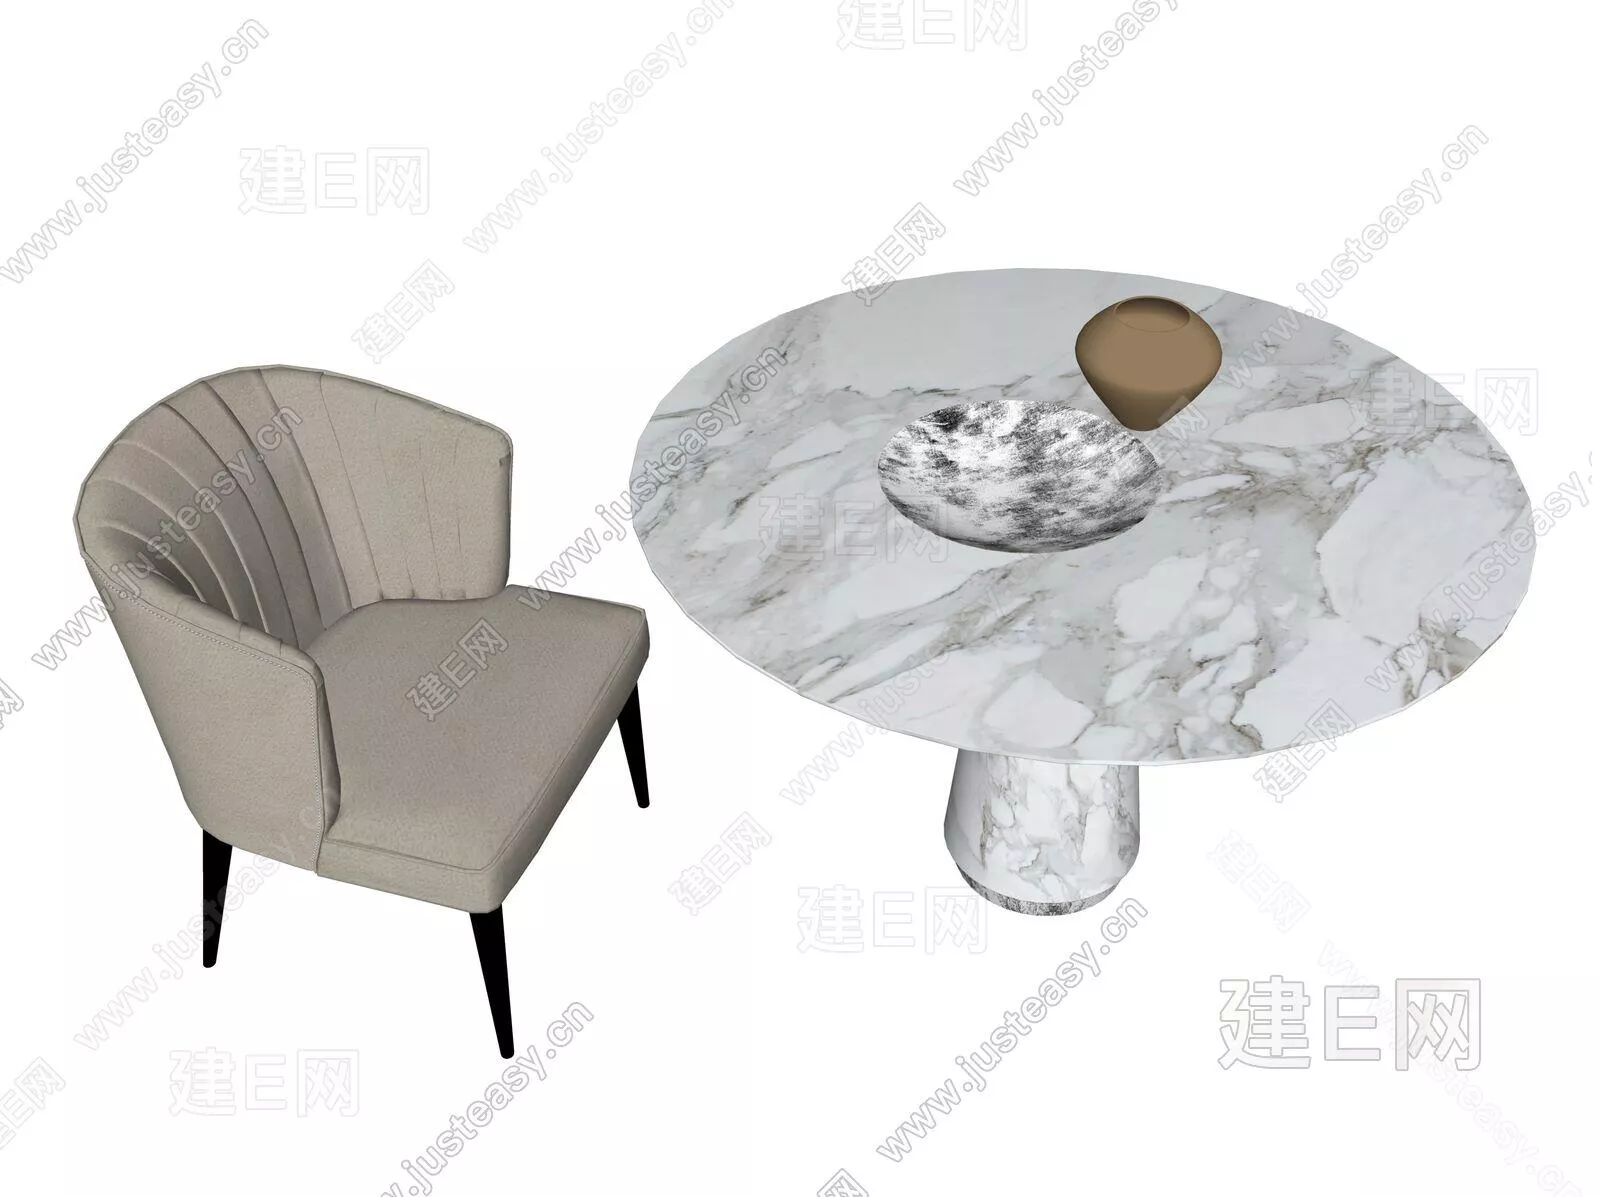 MODERN DINING TABLE SET - SKETCHUP 3D MODEL - ENSCAPE - 112214469